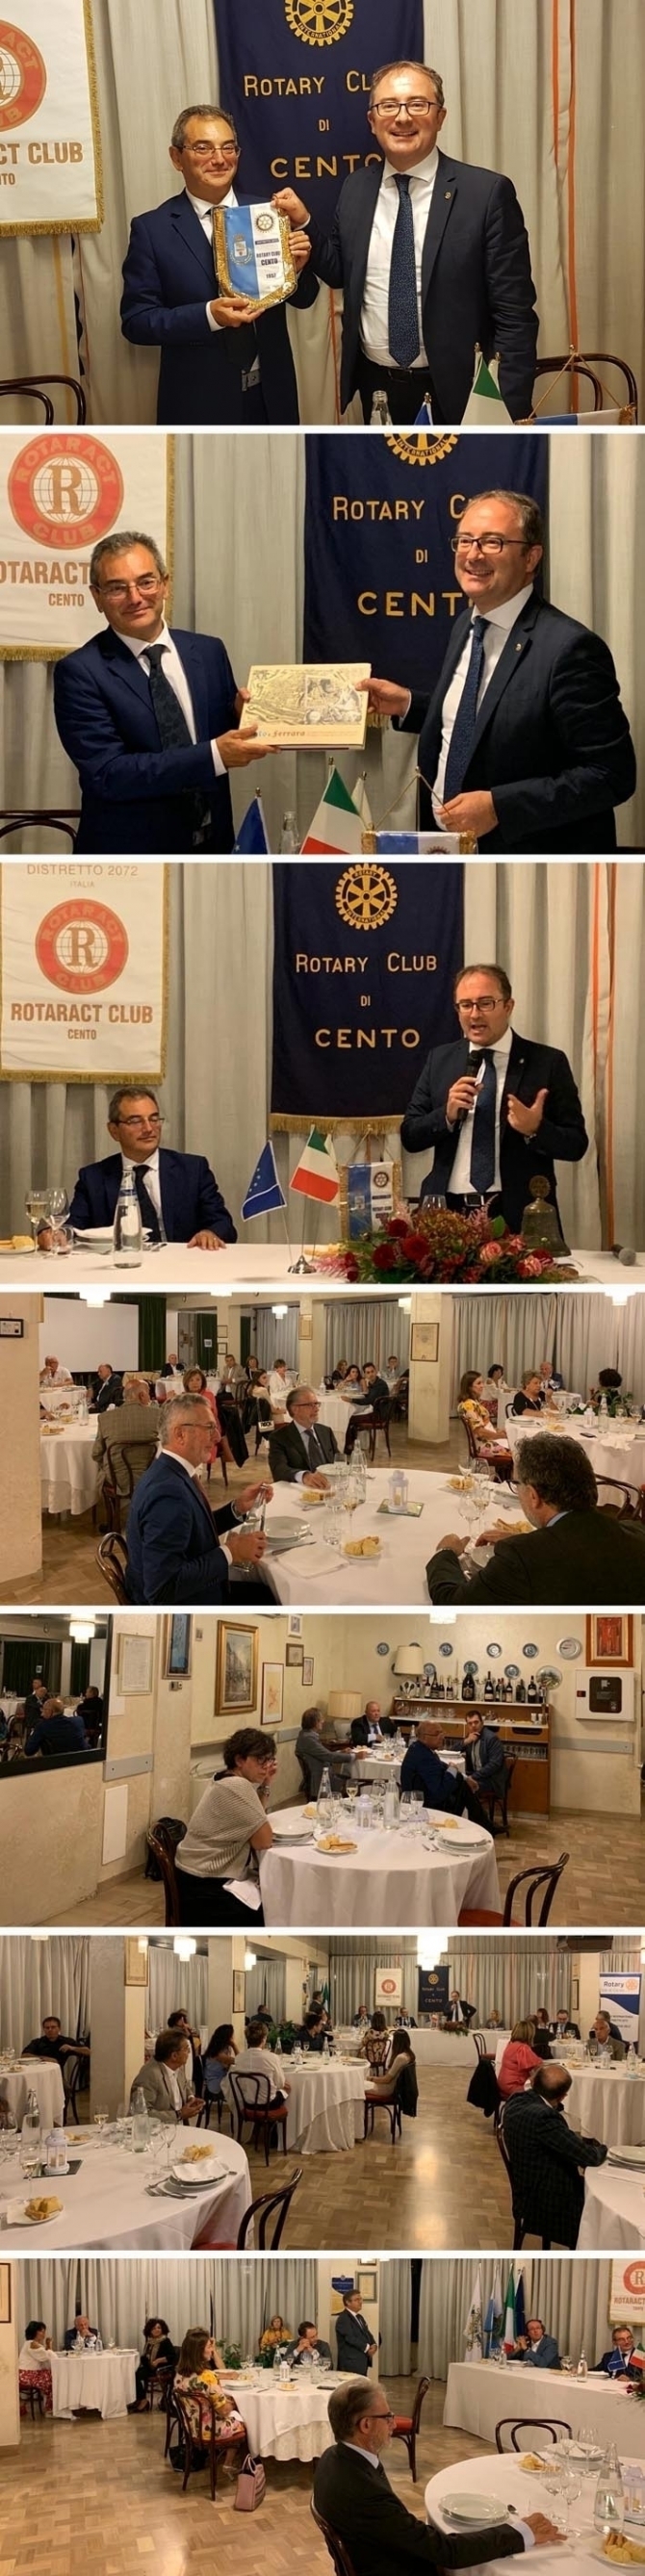 GIOVEDI’ 17/09/2020: INTELLIGENCE e ICT con il Prof. Francesco Zucconi - ROTARY CLUB di CENTO